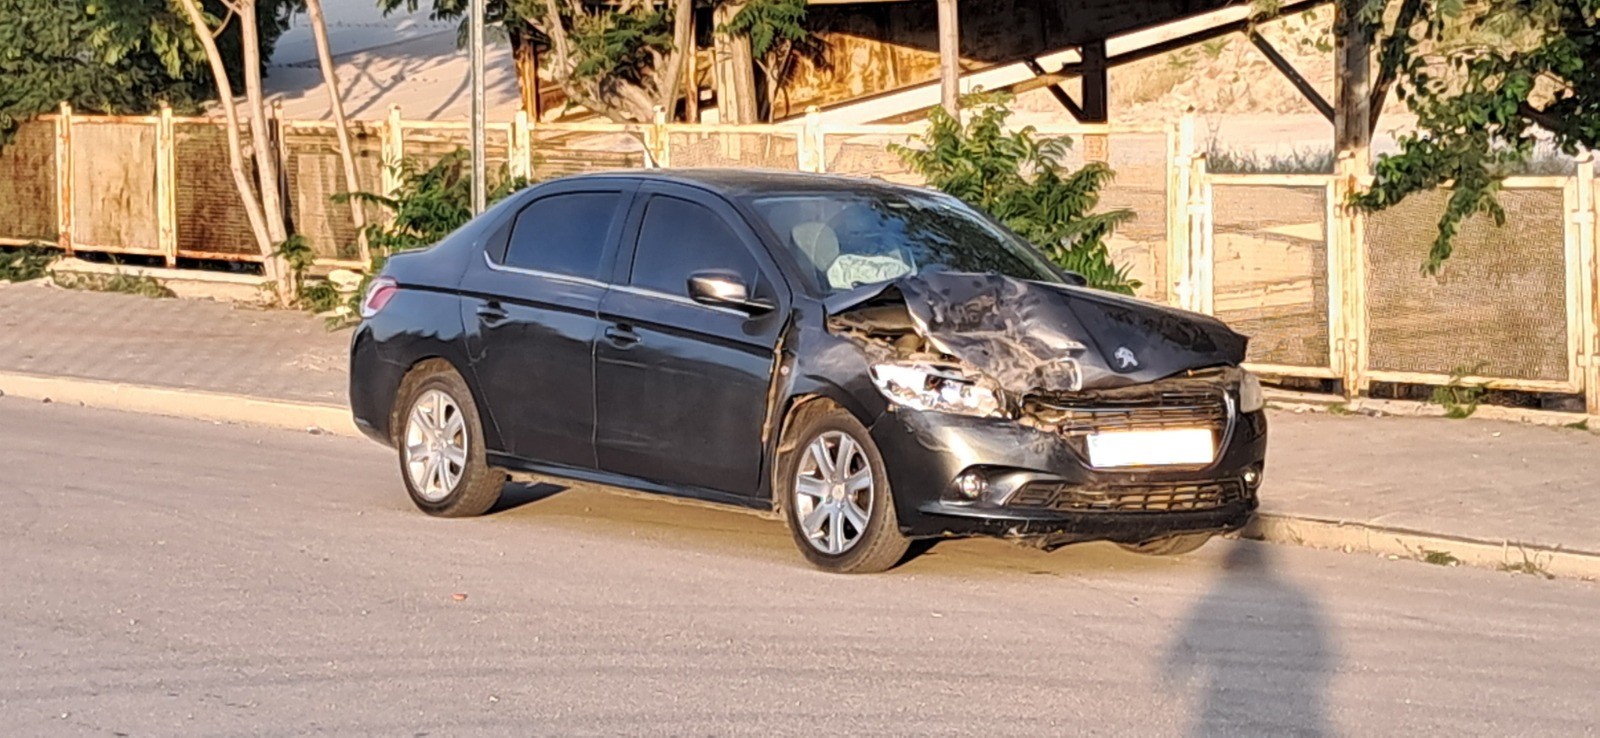 Karaman’da iki araç birbirine çarptı: 1 yaralı